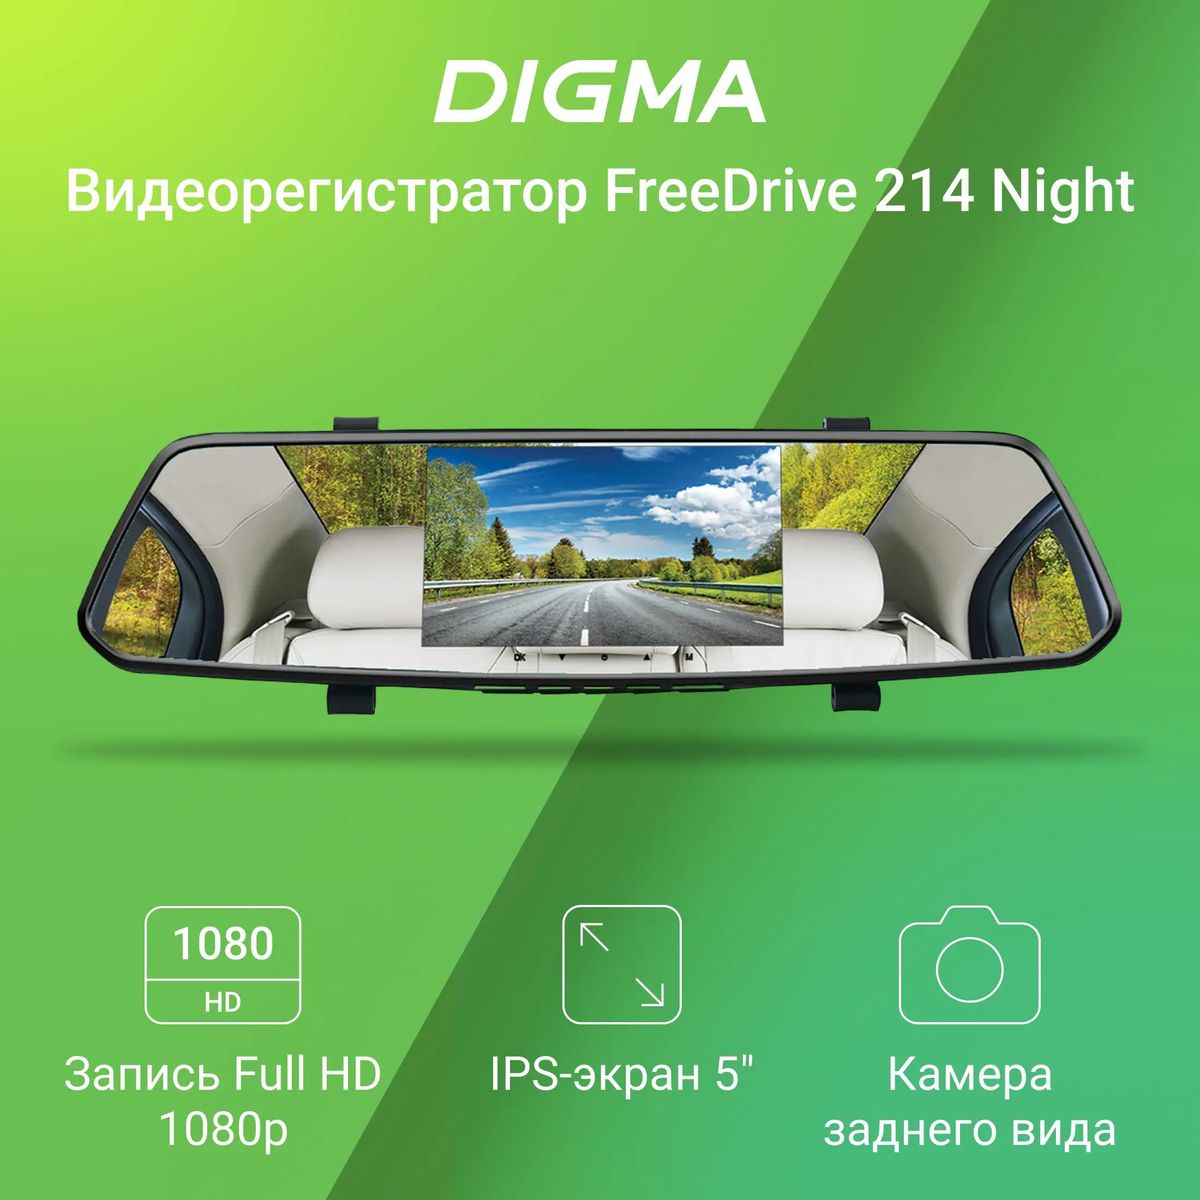 Видеорегистратор Digma FreeDrive 214 Night FHD,  черный